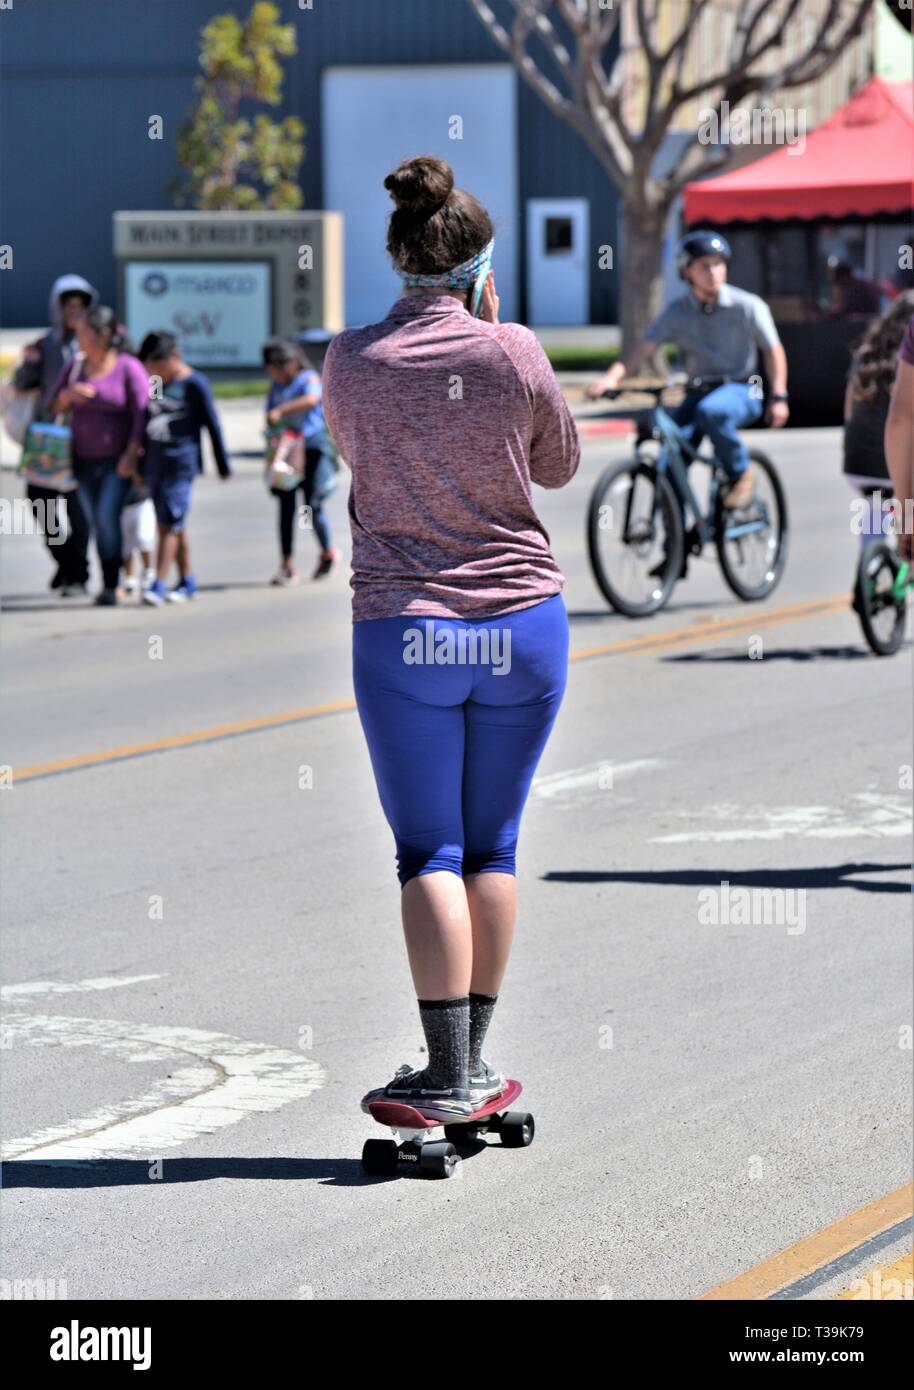 donna di età teenager sullo skateboard in strada durante l'evento pubblico, piuttosto che camminare a lunga distanza Foto Stock